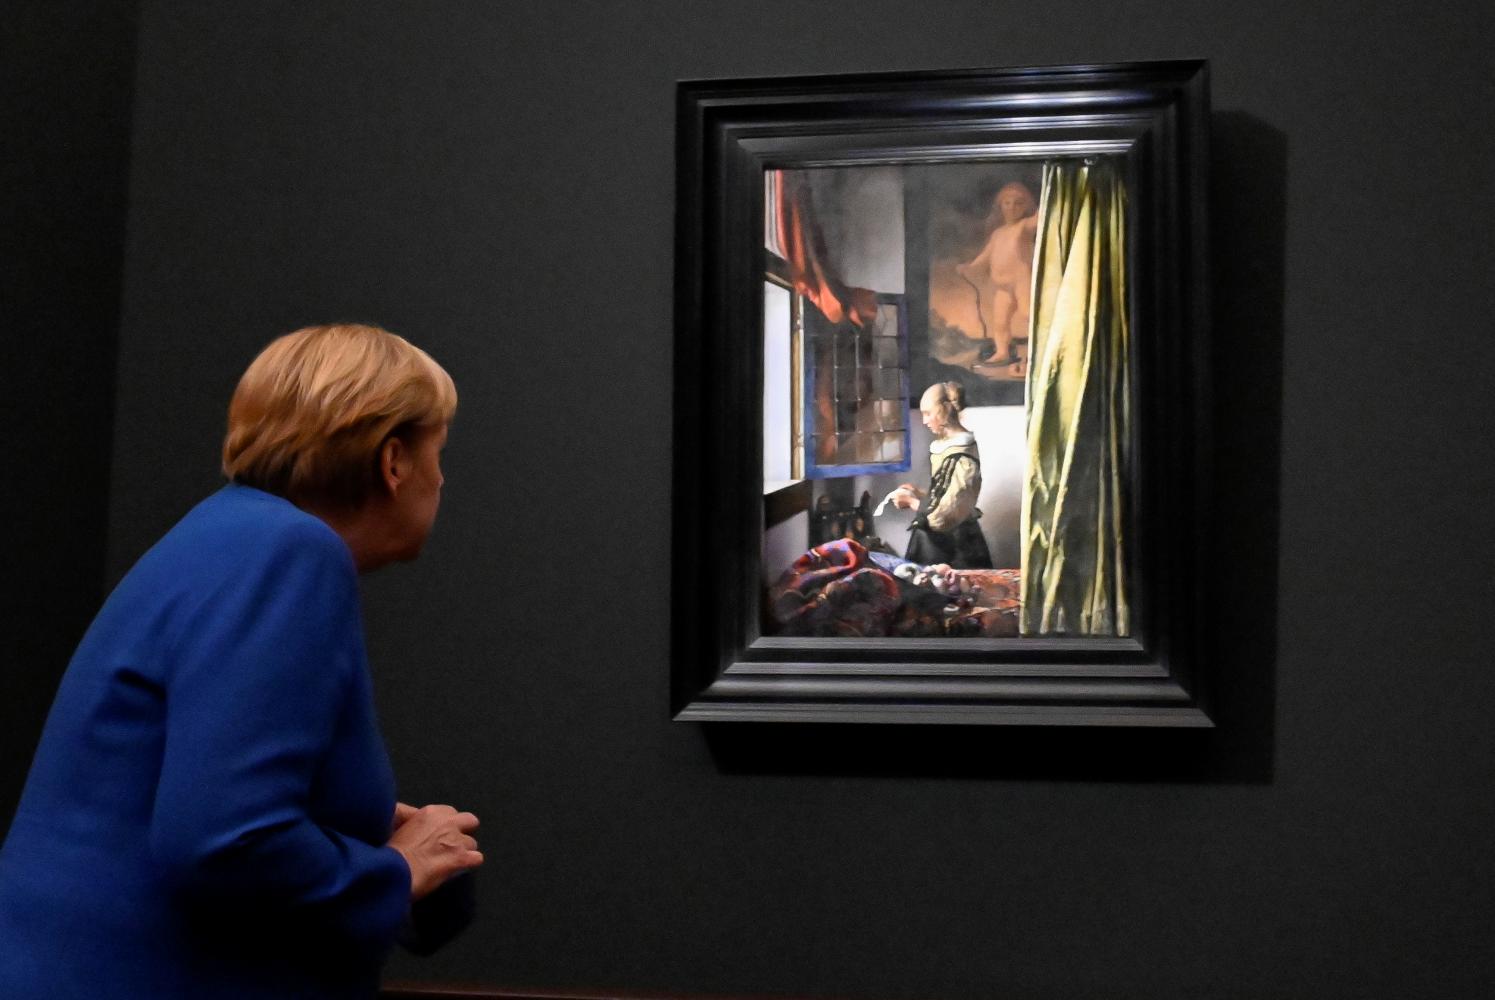 Bundeskanzlerin Angela Merkel (CDU) im September bei der Eröffnung der Ausstellung "Johannes Vermeer. Vom Innehalten" der Staatlichen Kunstsammlungen Dresden